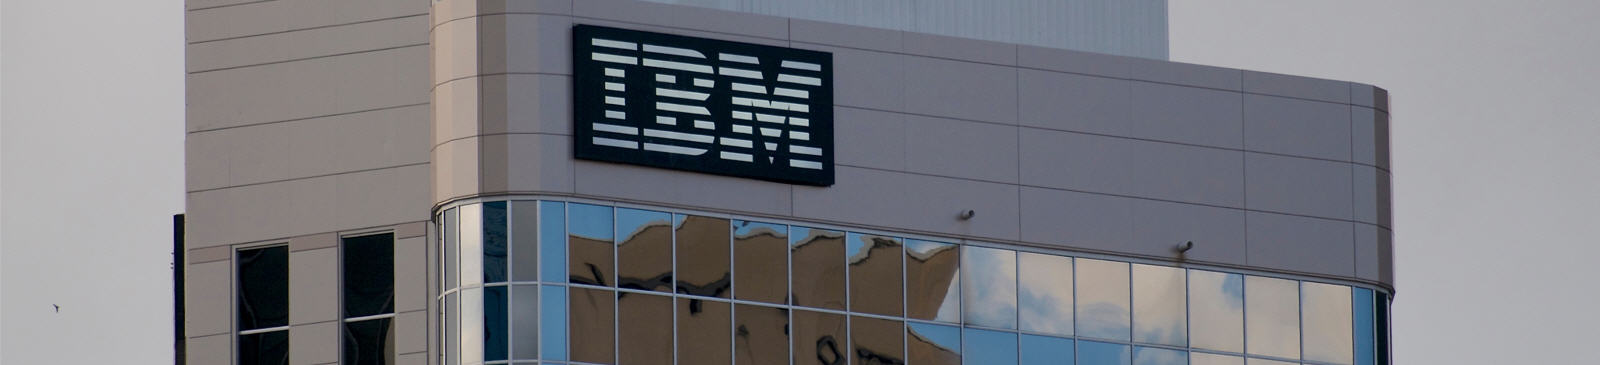 De koers van IBM (NYSE ticker IBM).